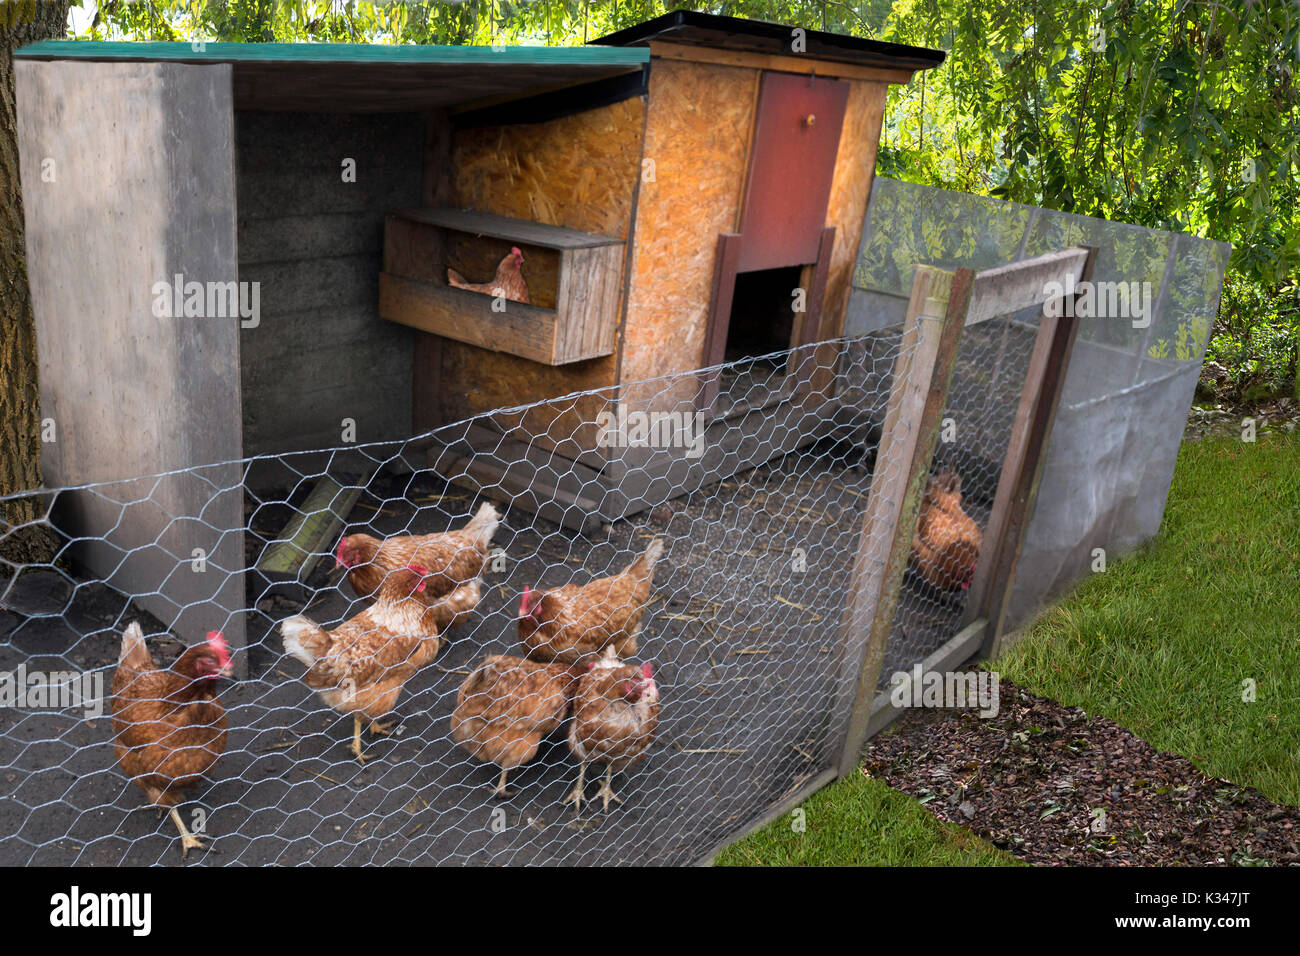 Hühnerstall in einem Garten: Hühner in einem Hühnerstall, in einem Garten Stockfoto